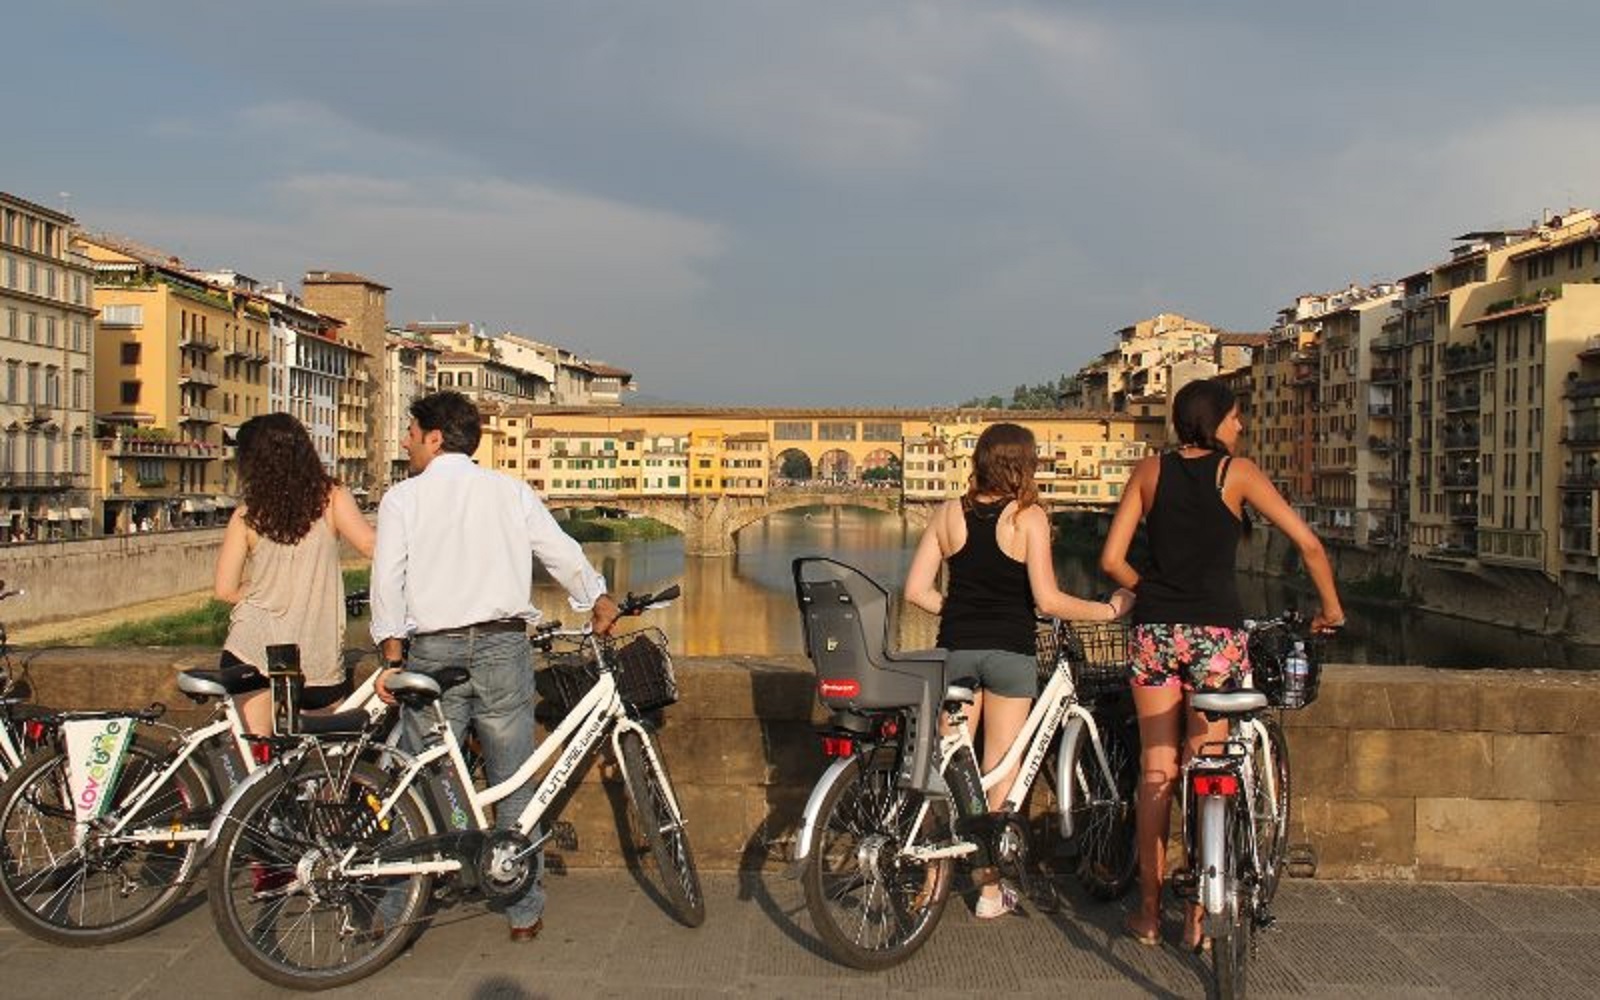 Scopri Firenze da una prospettiva diversa con un tour in bicicletta di 2 ore nei suoi luoghi iconici